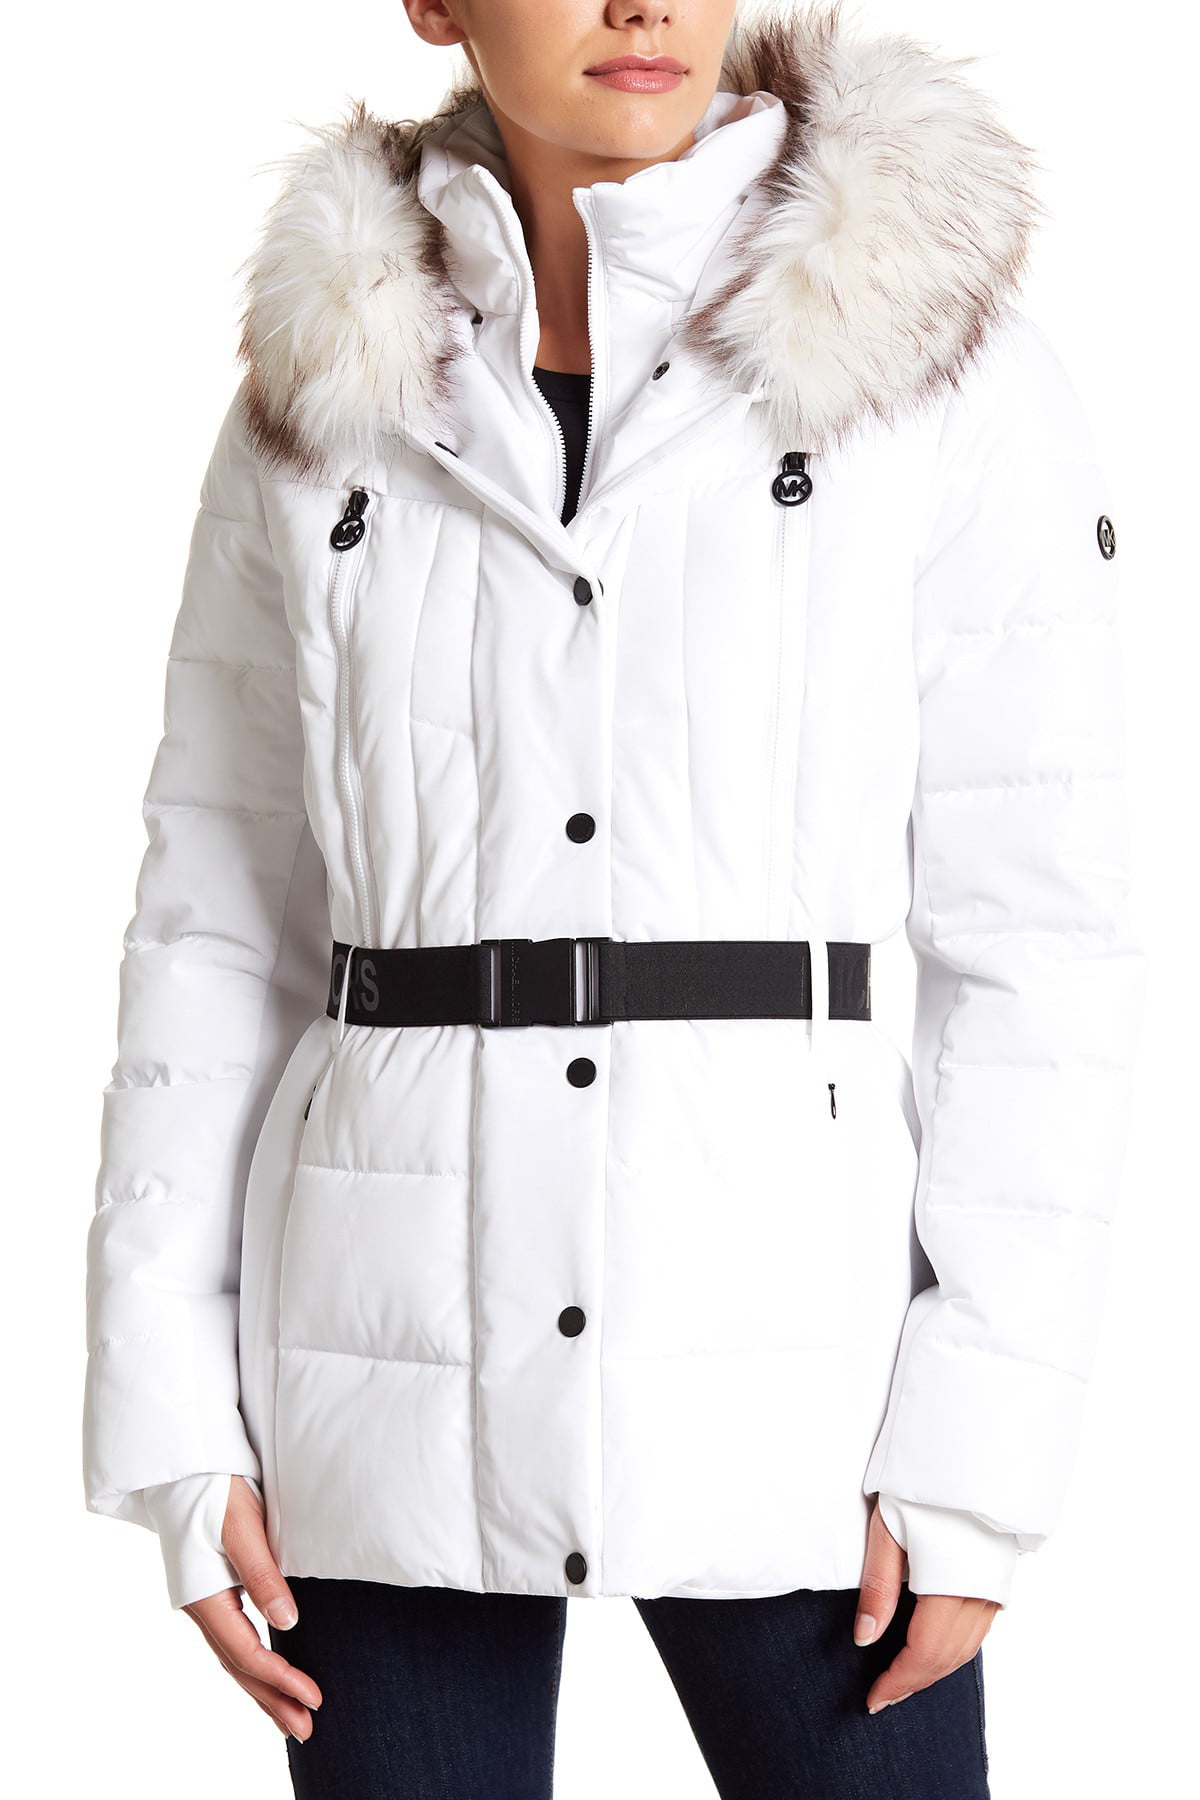 white michael kors coat